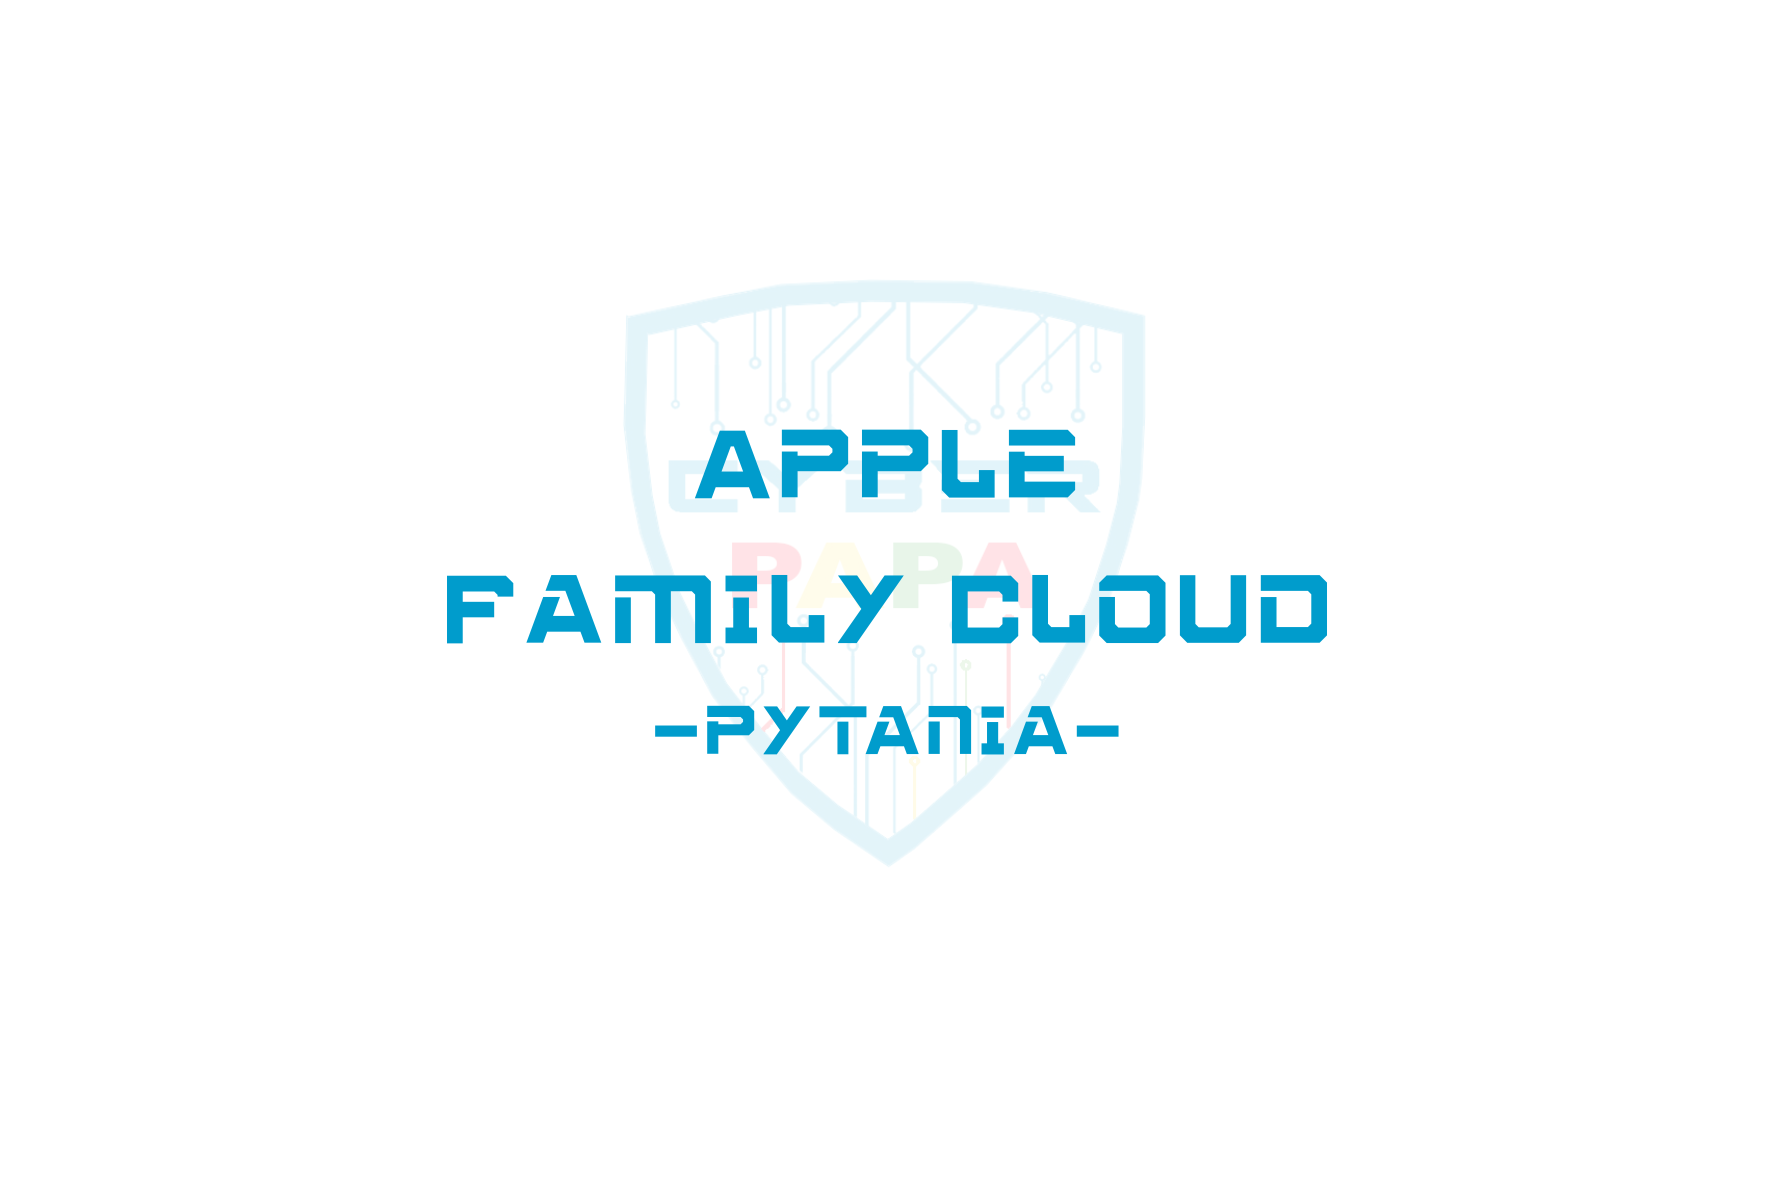 Apple Family Cloud - pytania